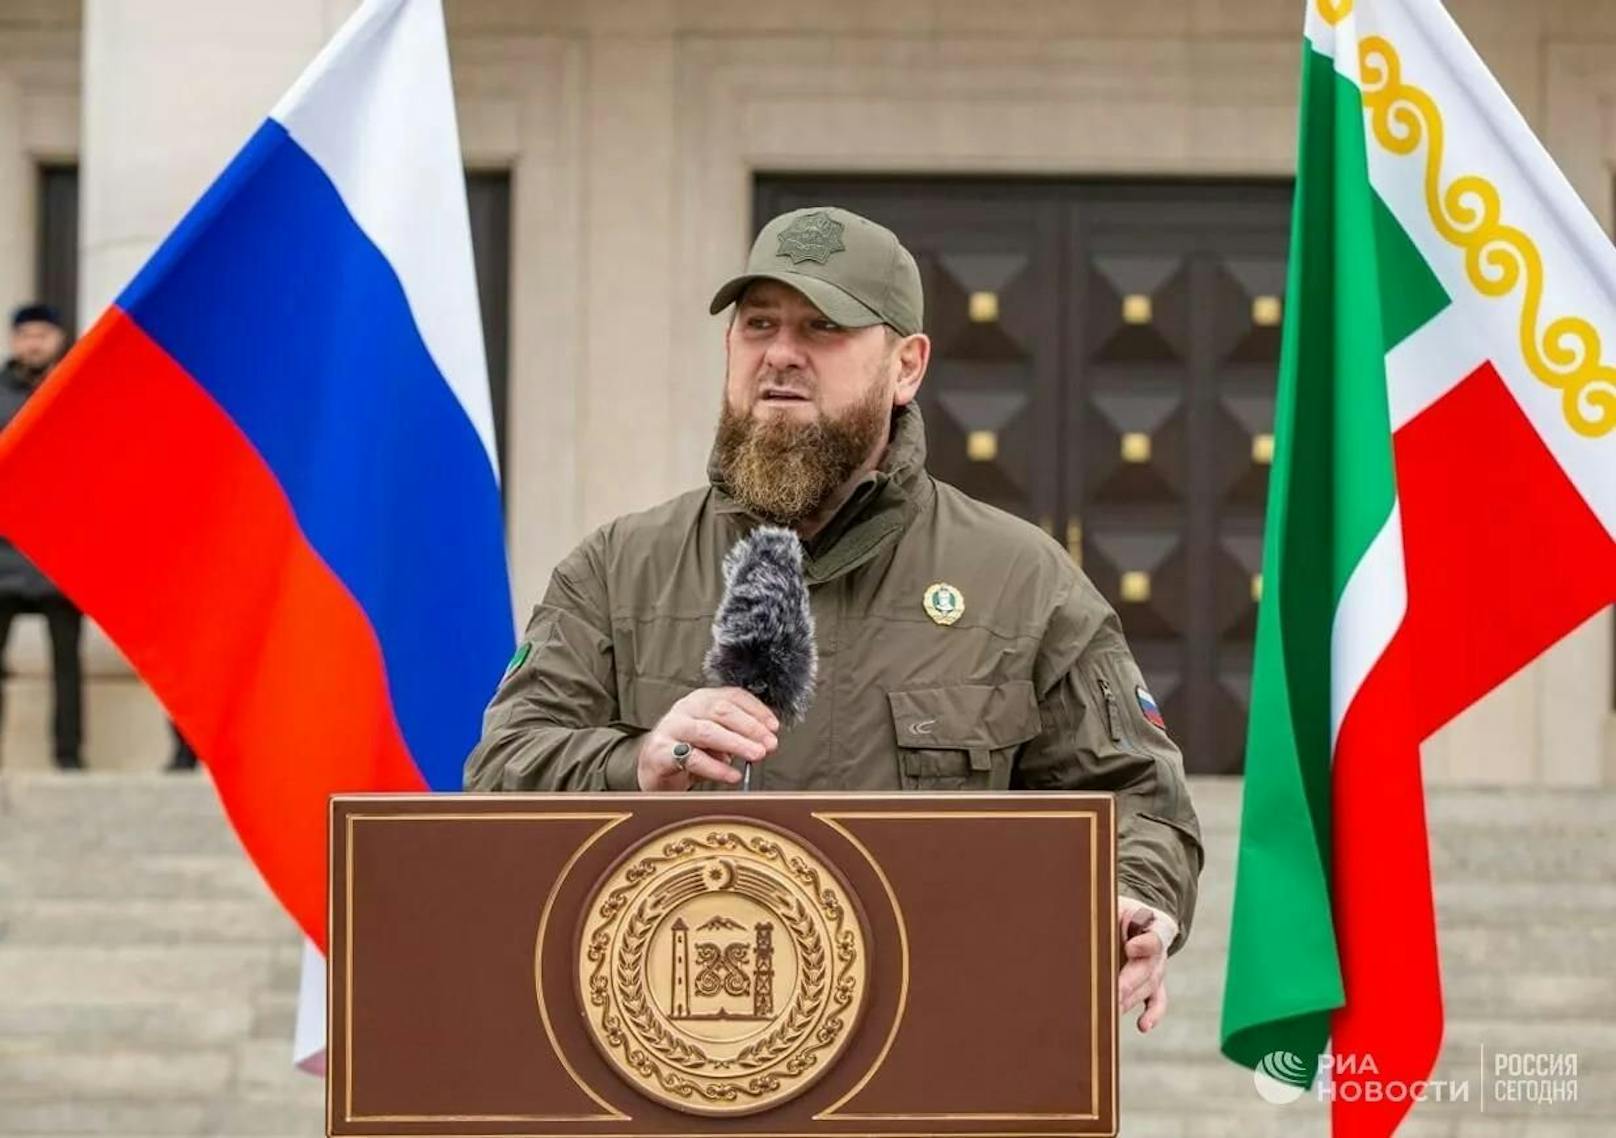 Der tschetschenische Machthaber Ramsan Kadyrow hat per Telegram verkündet, er habe eine weitere große Gruppe Freiwilliger zur Bekämpfung von "Nazis" in die Ukraine geschickt.